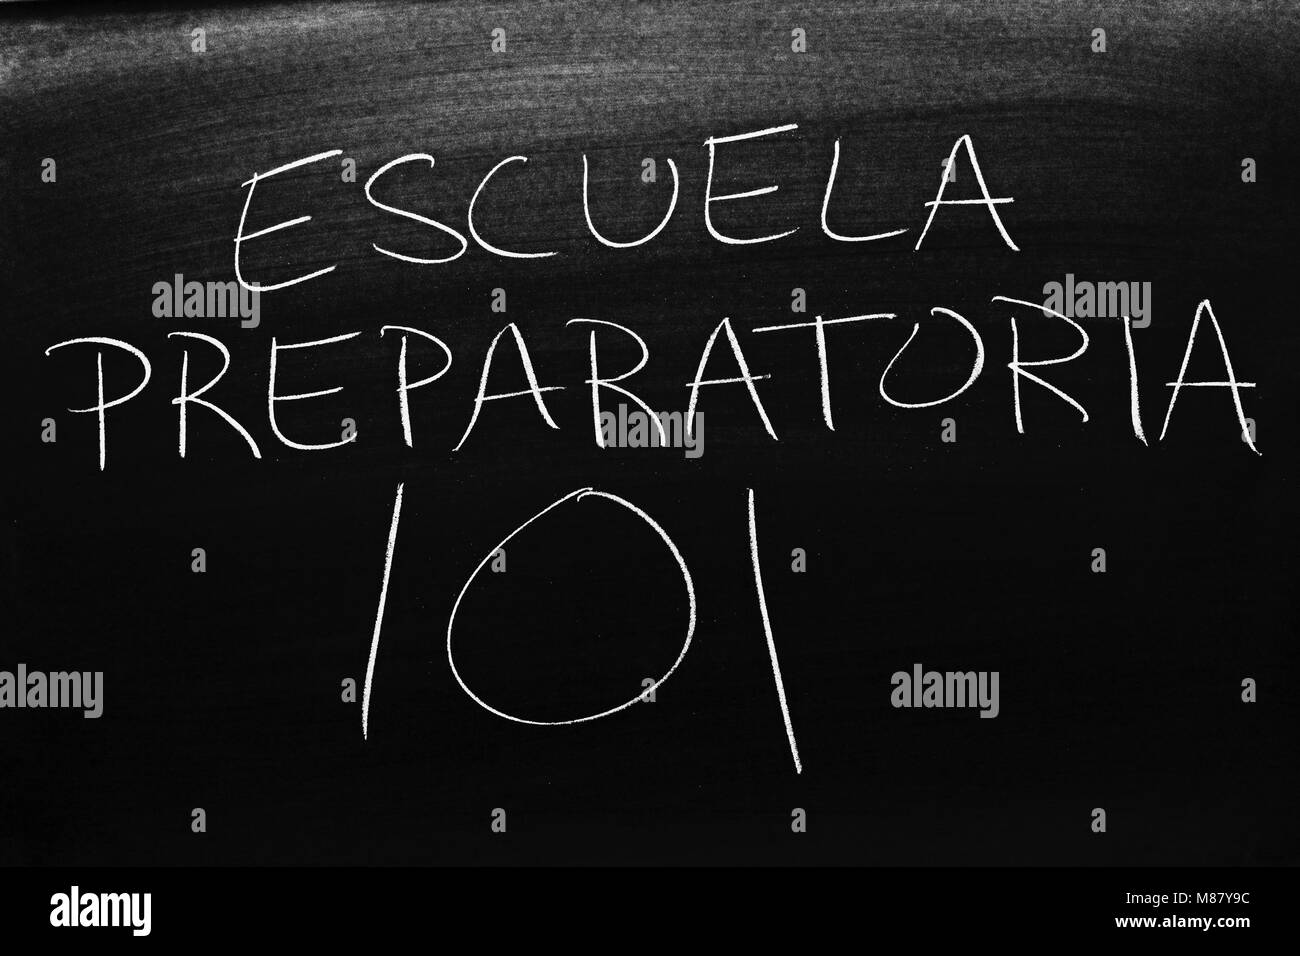 The words Escuela Preparatoria 101 on a blackboard in chalk Stock Photo